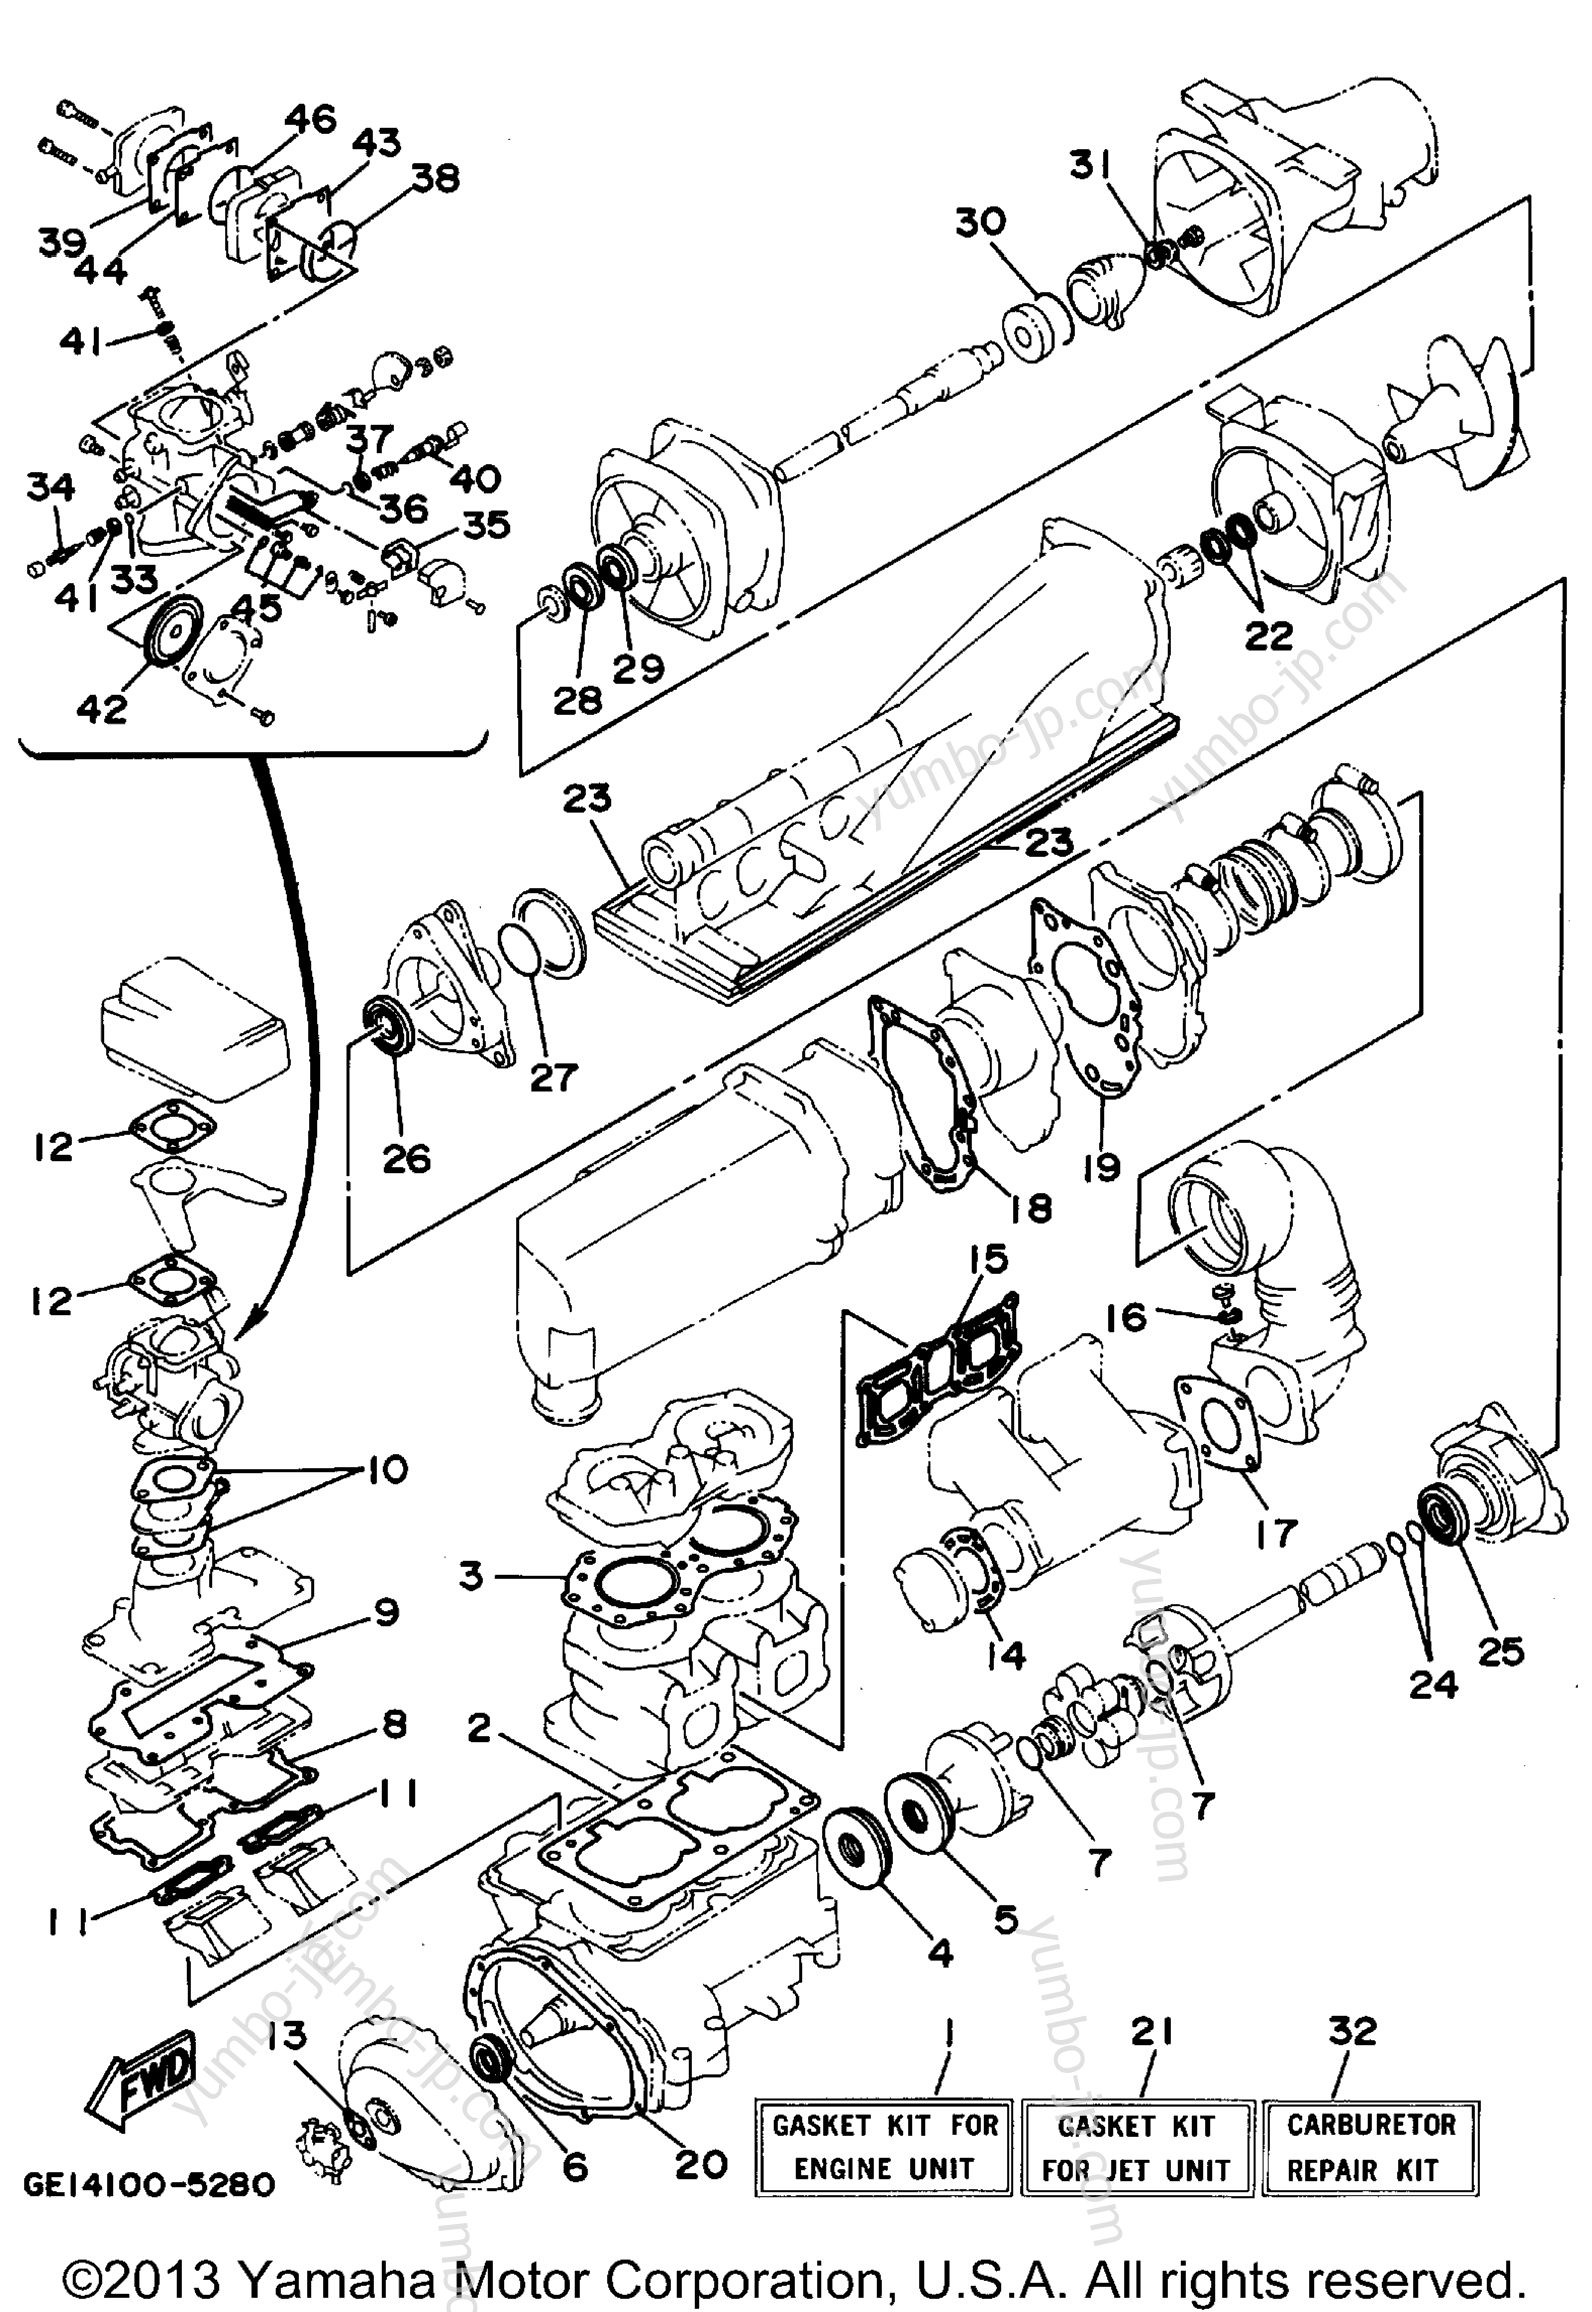 Ремкомплект / Набор прокладок для гидроциклов YAMAHA WAVE RUNNER III GP (WRA700T) 1995 г.